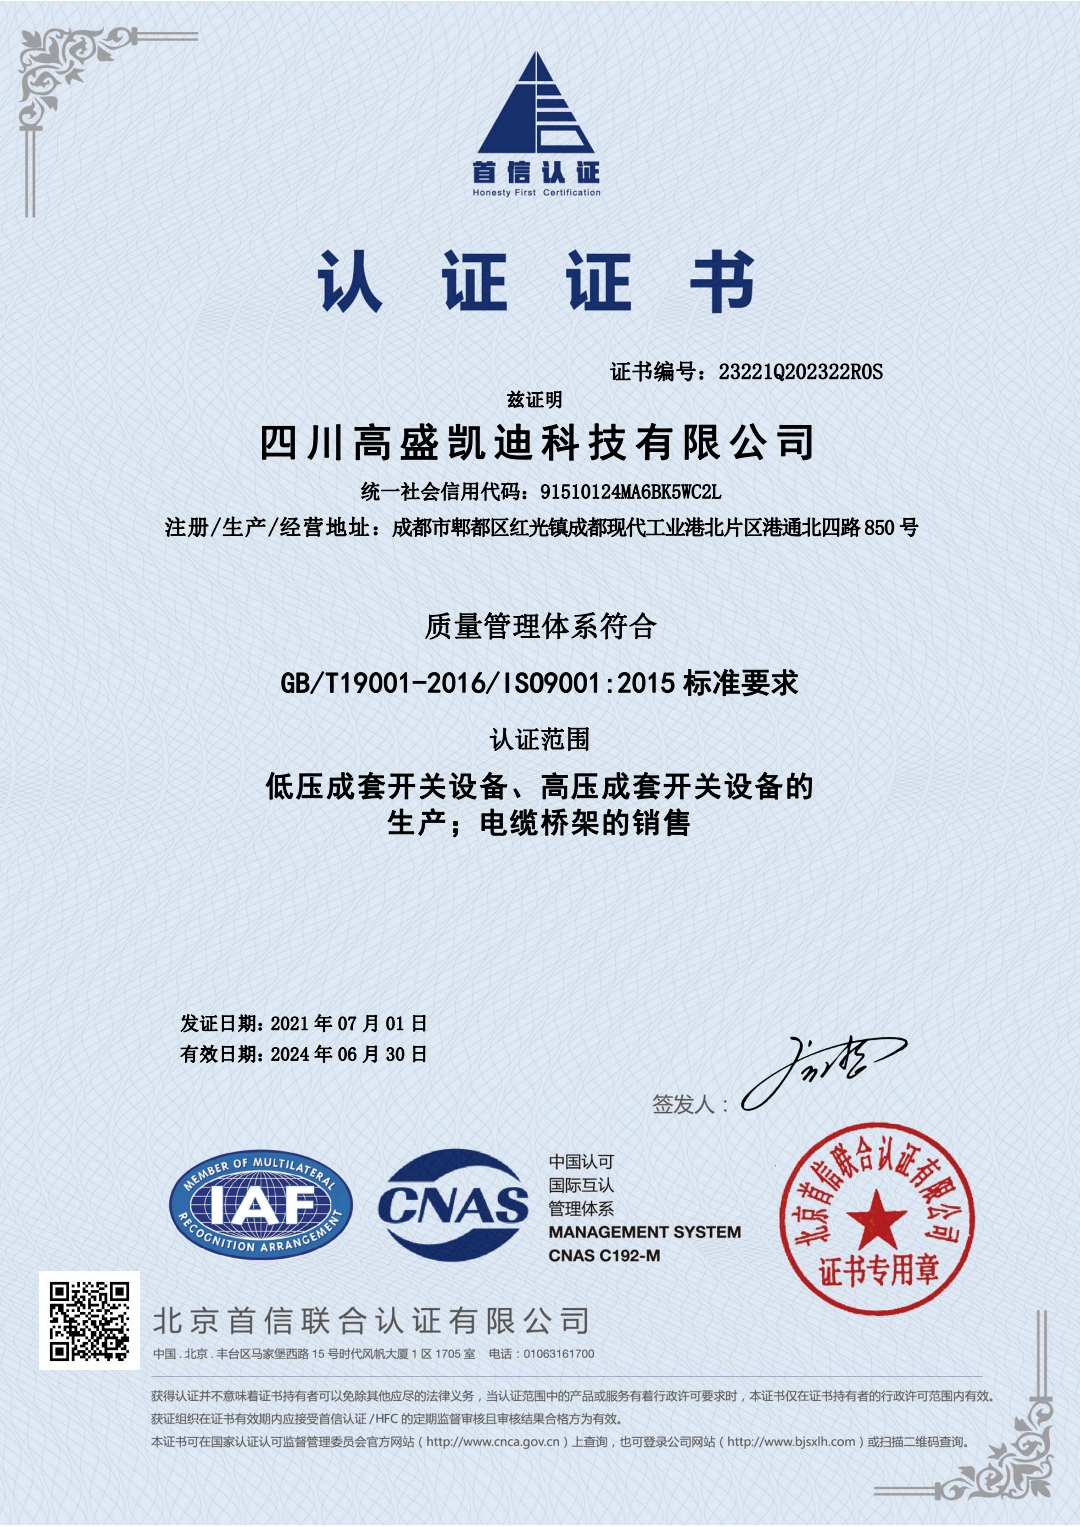 恭喜四川高盛凯迪科技有限公司顺利通过ISO9001质量体系认证证书